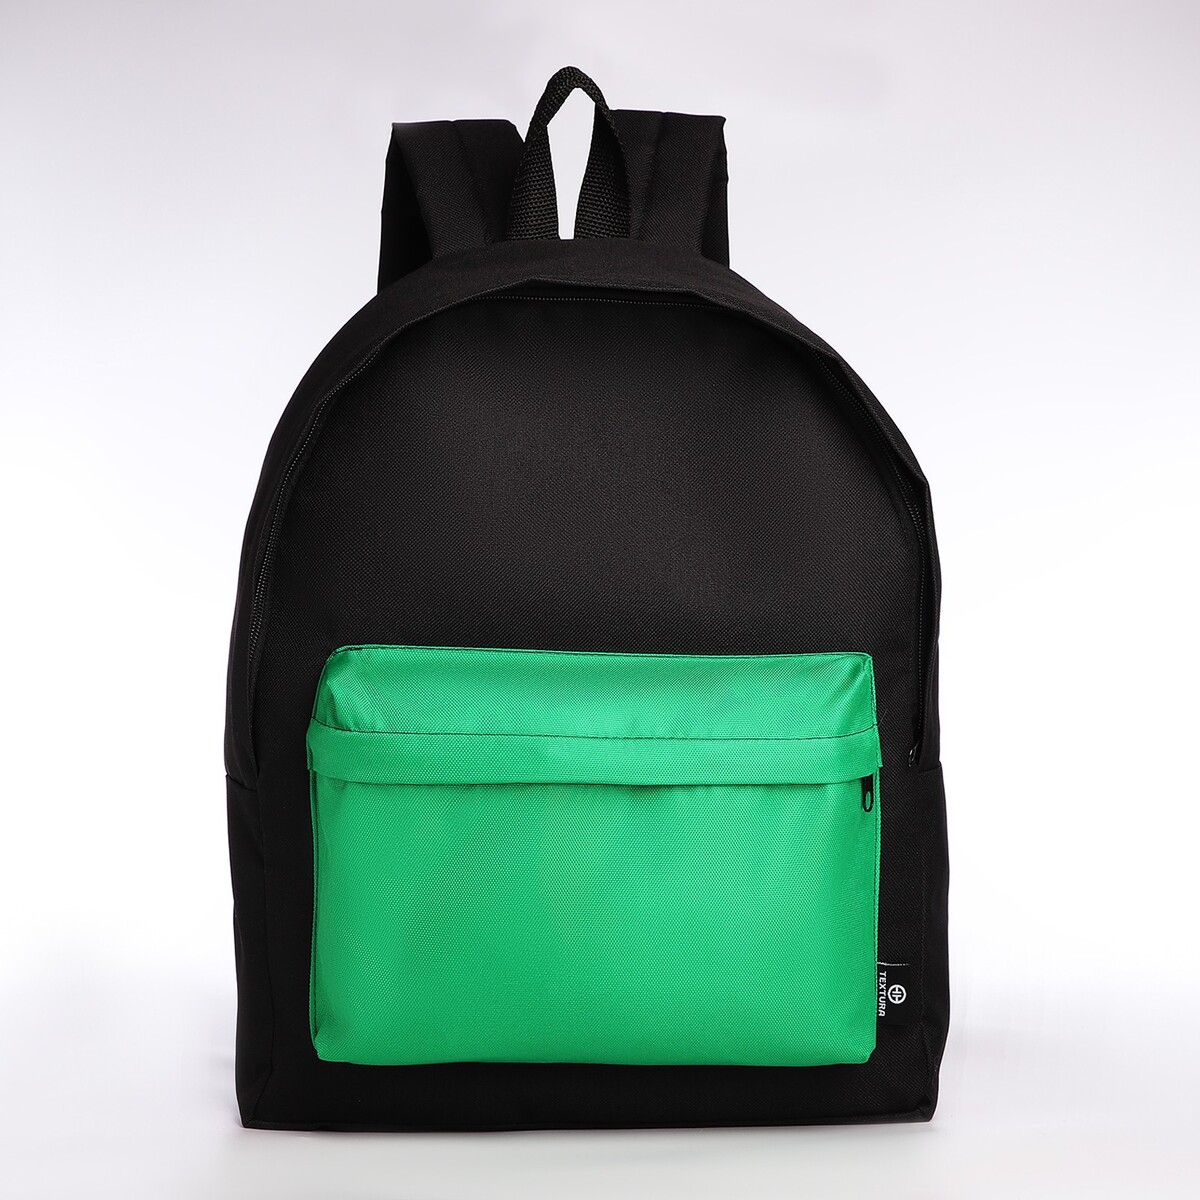 Спортивный рюкзак textura, 20 литров, цвет черный/зеленый рюкзак rockbros 20 литров rb h9 bk